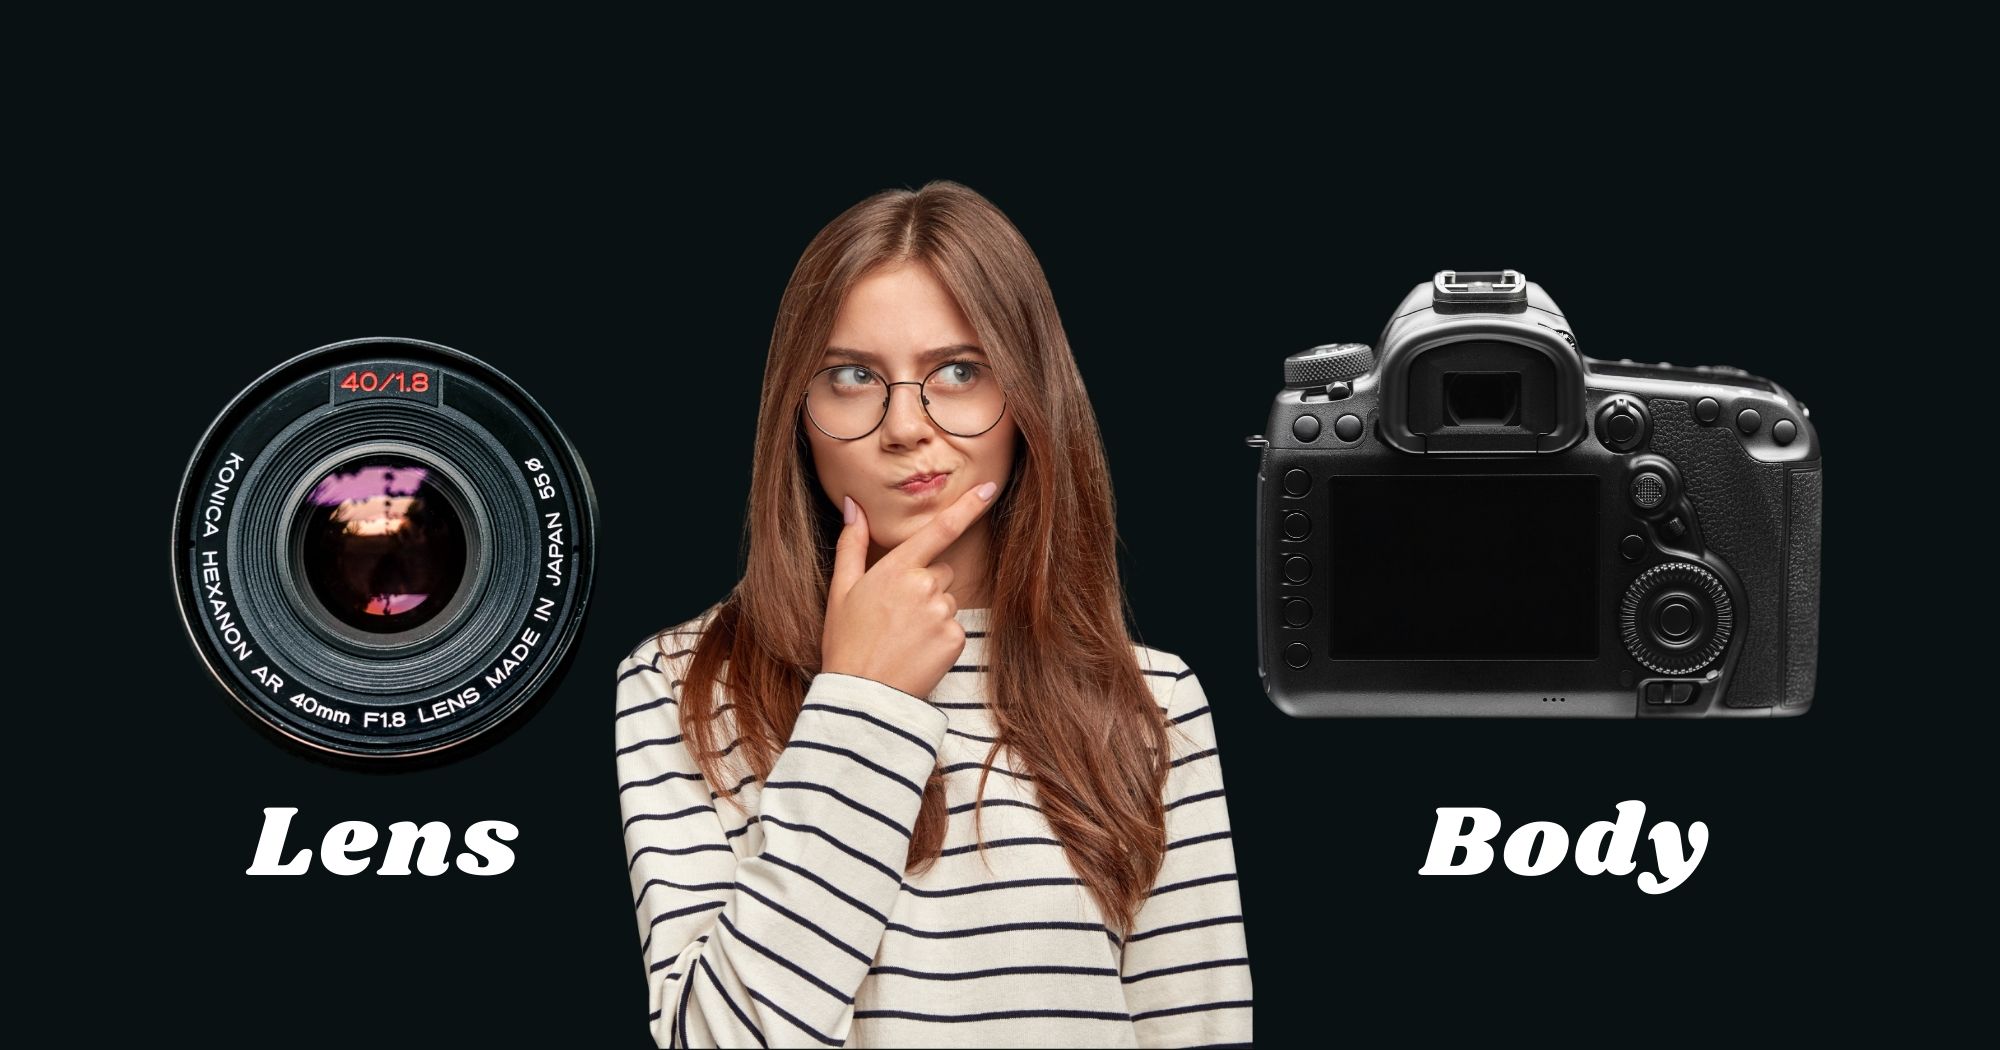 camera lens or body